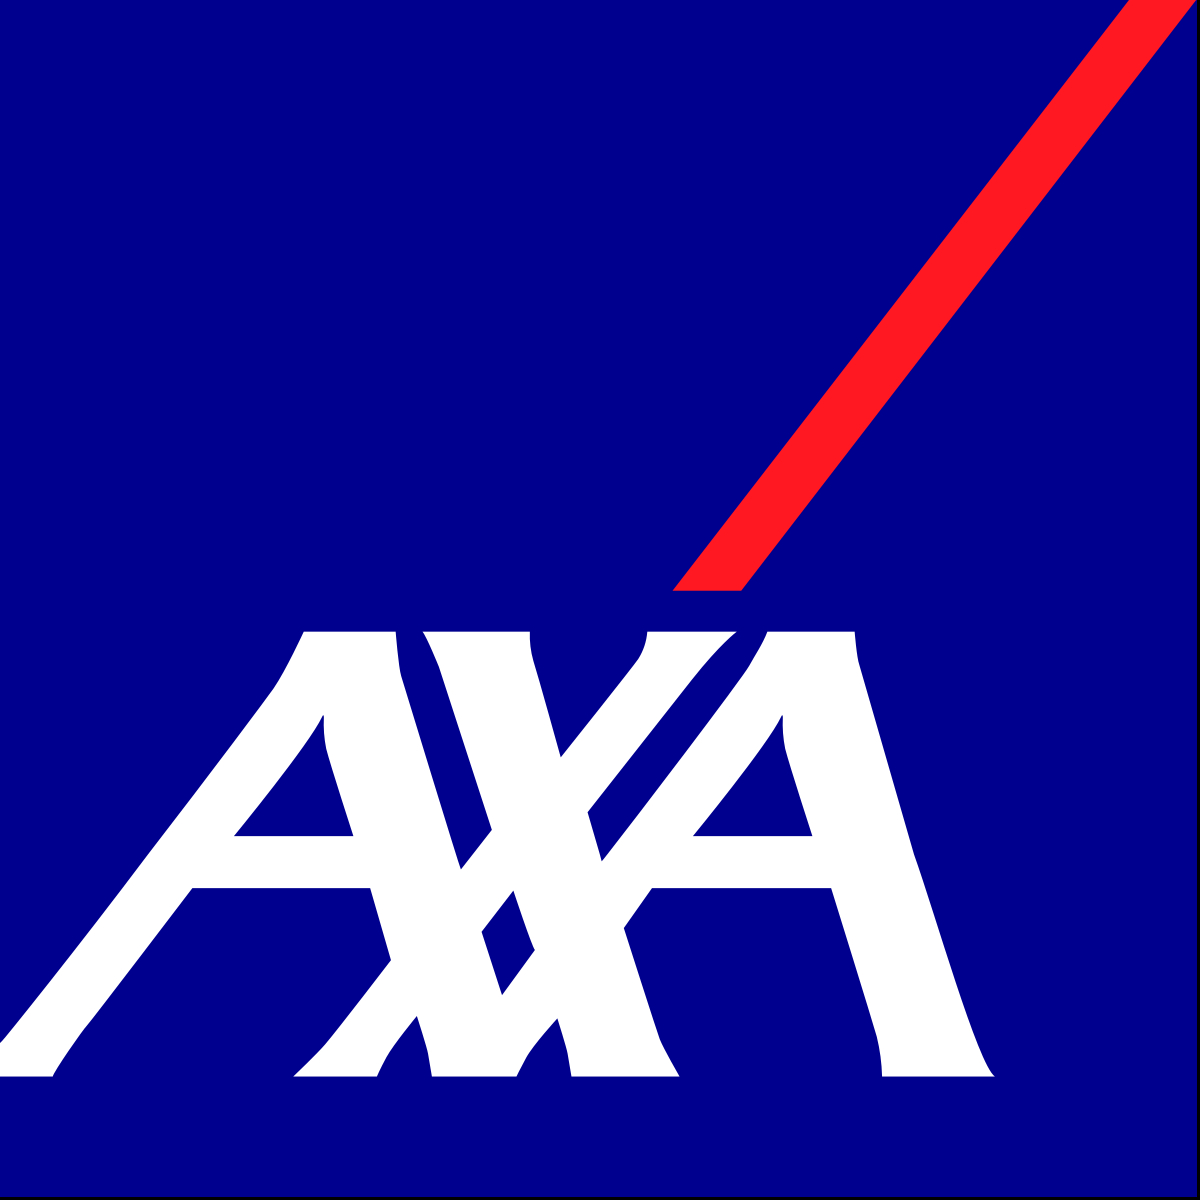 Axa Wikipedia throughout sizing 1200 X 1200